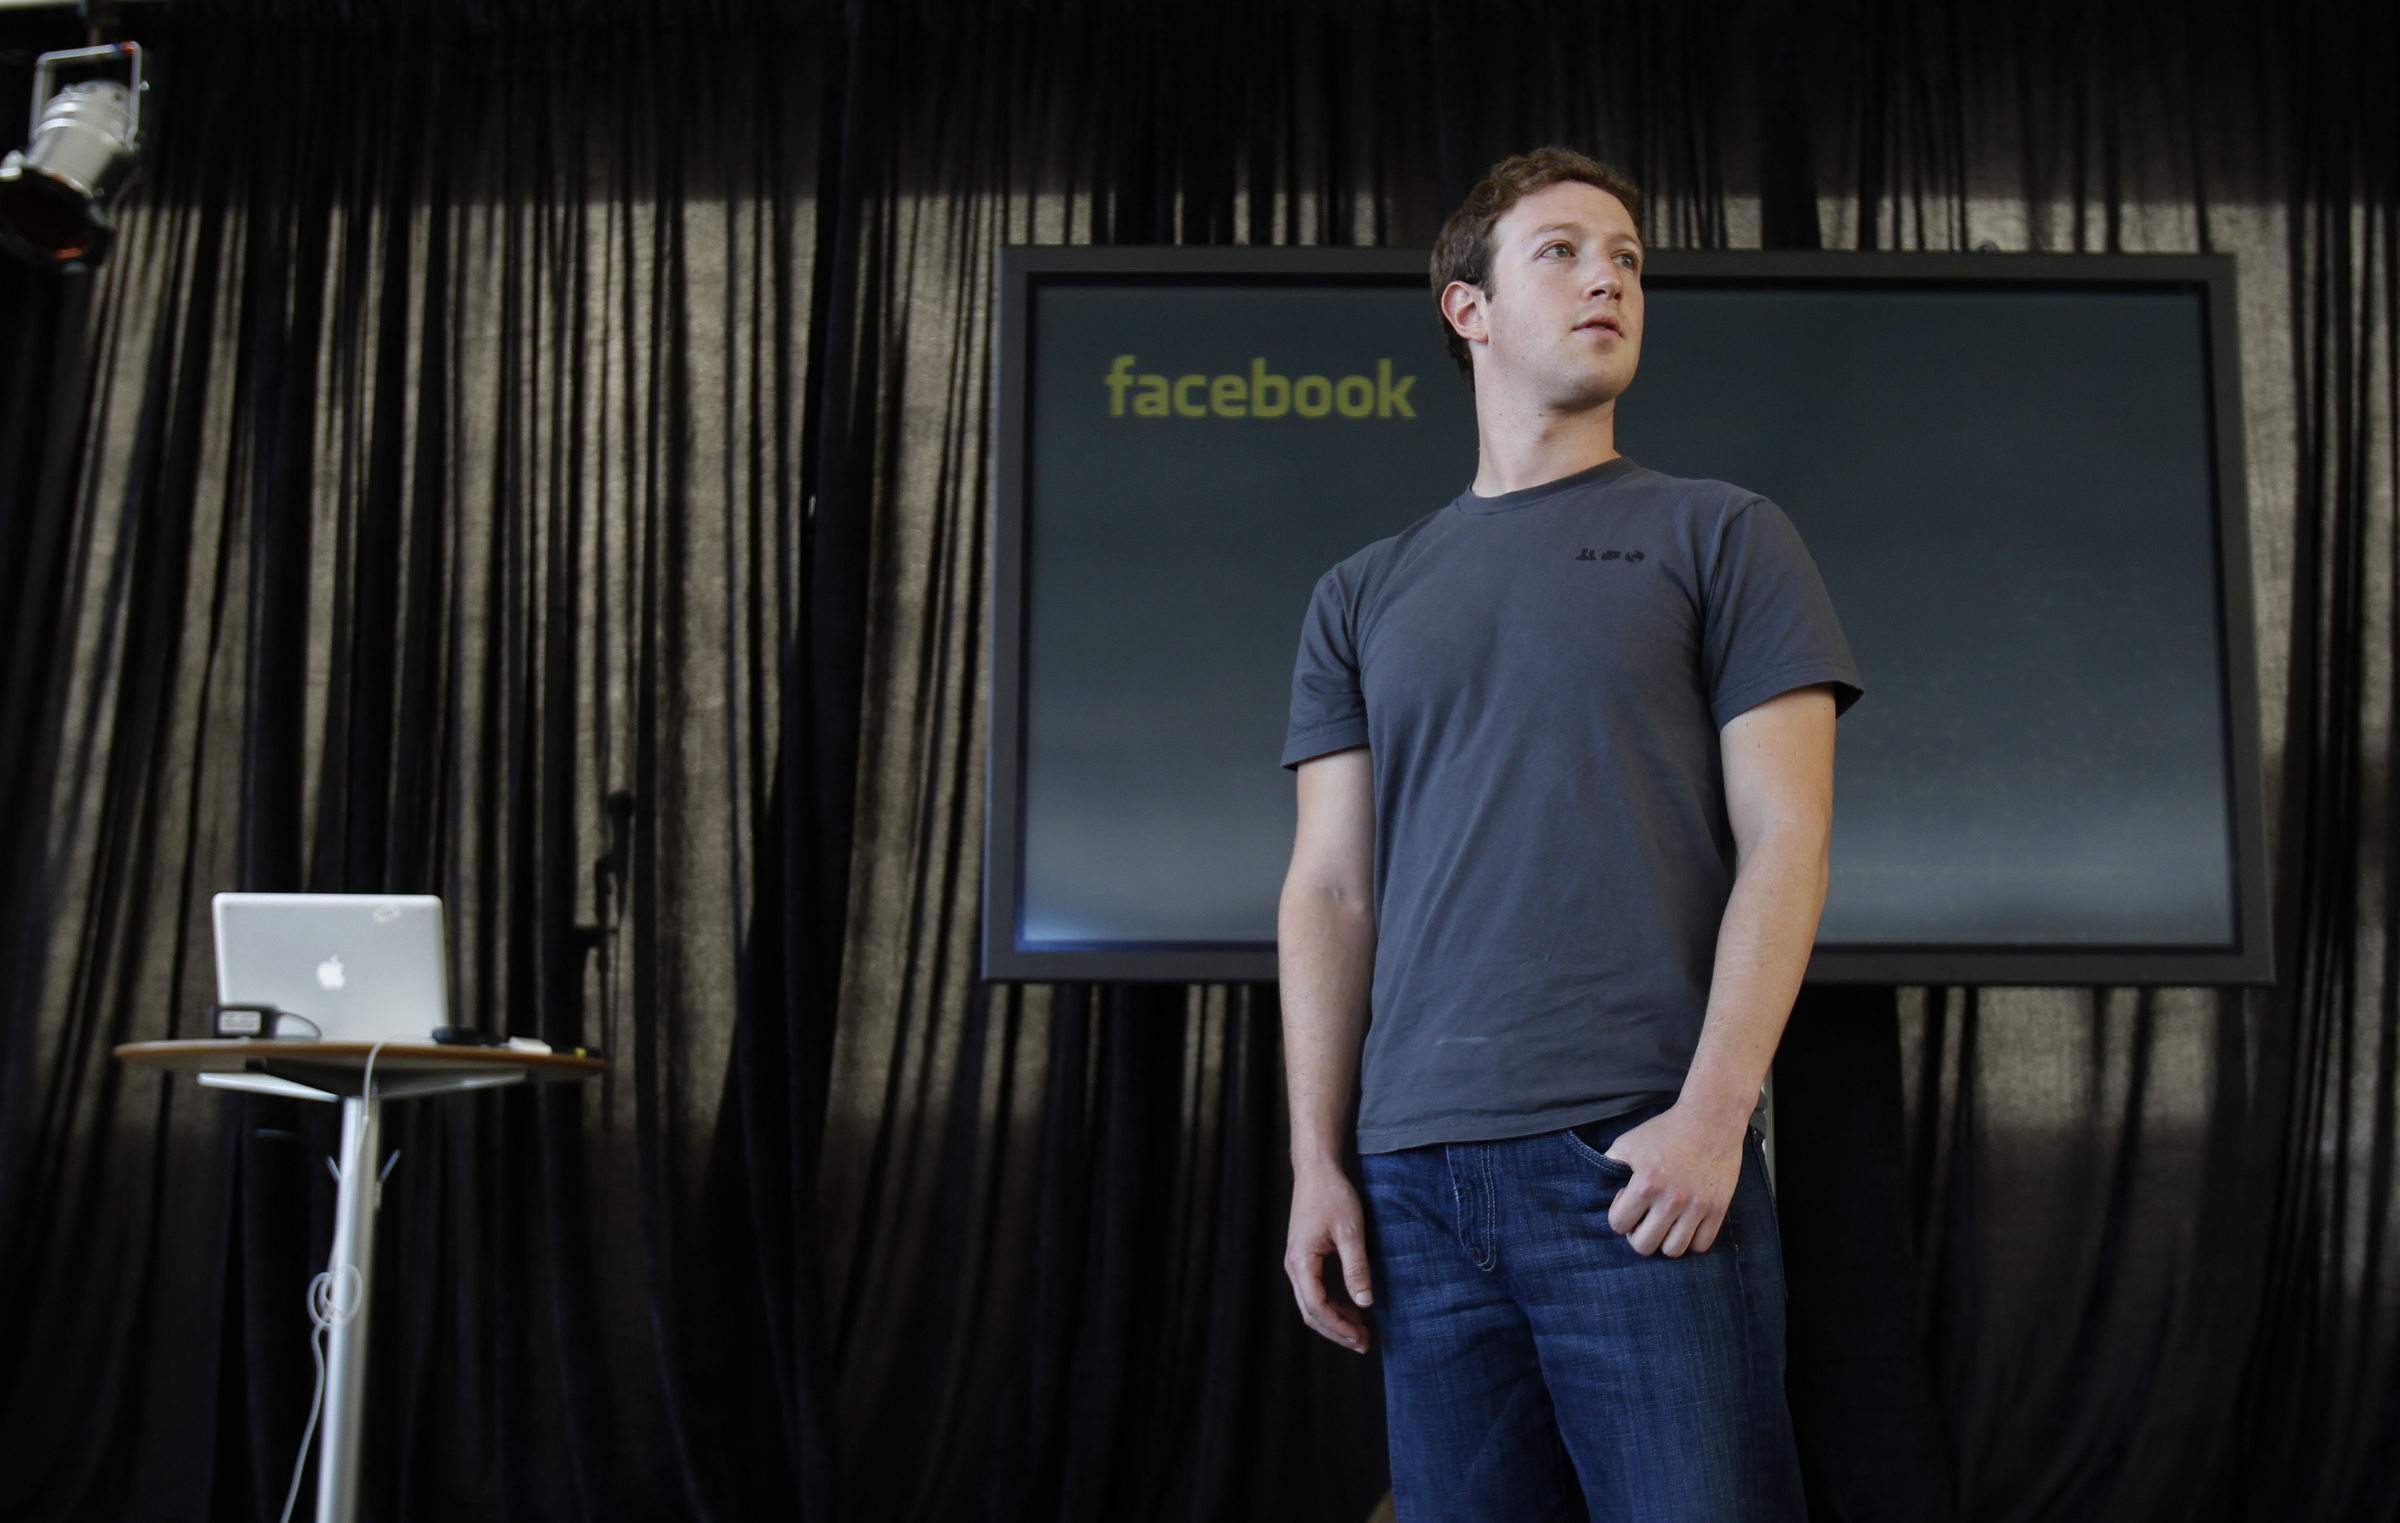 Mark Zuckerberg nổi tiếng với trang phục áo phông, quần jean do không muốn lãng phí sức lực vào việc quyết định bản thân mặc gì. Ảnh:Reuters